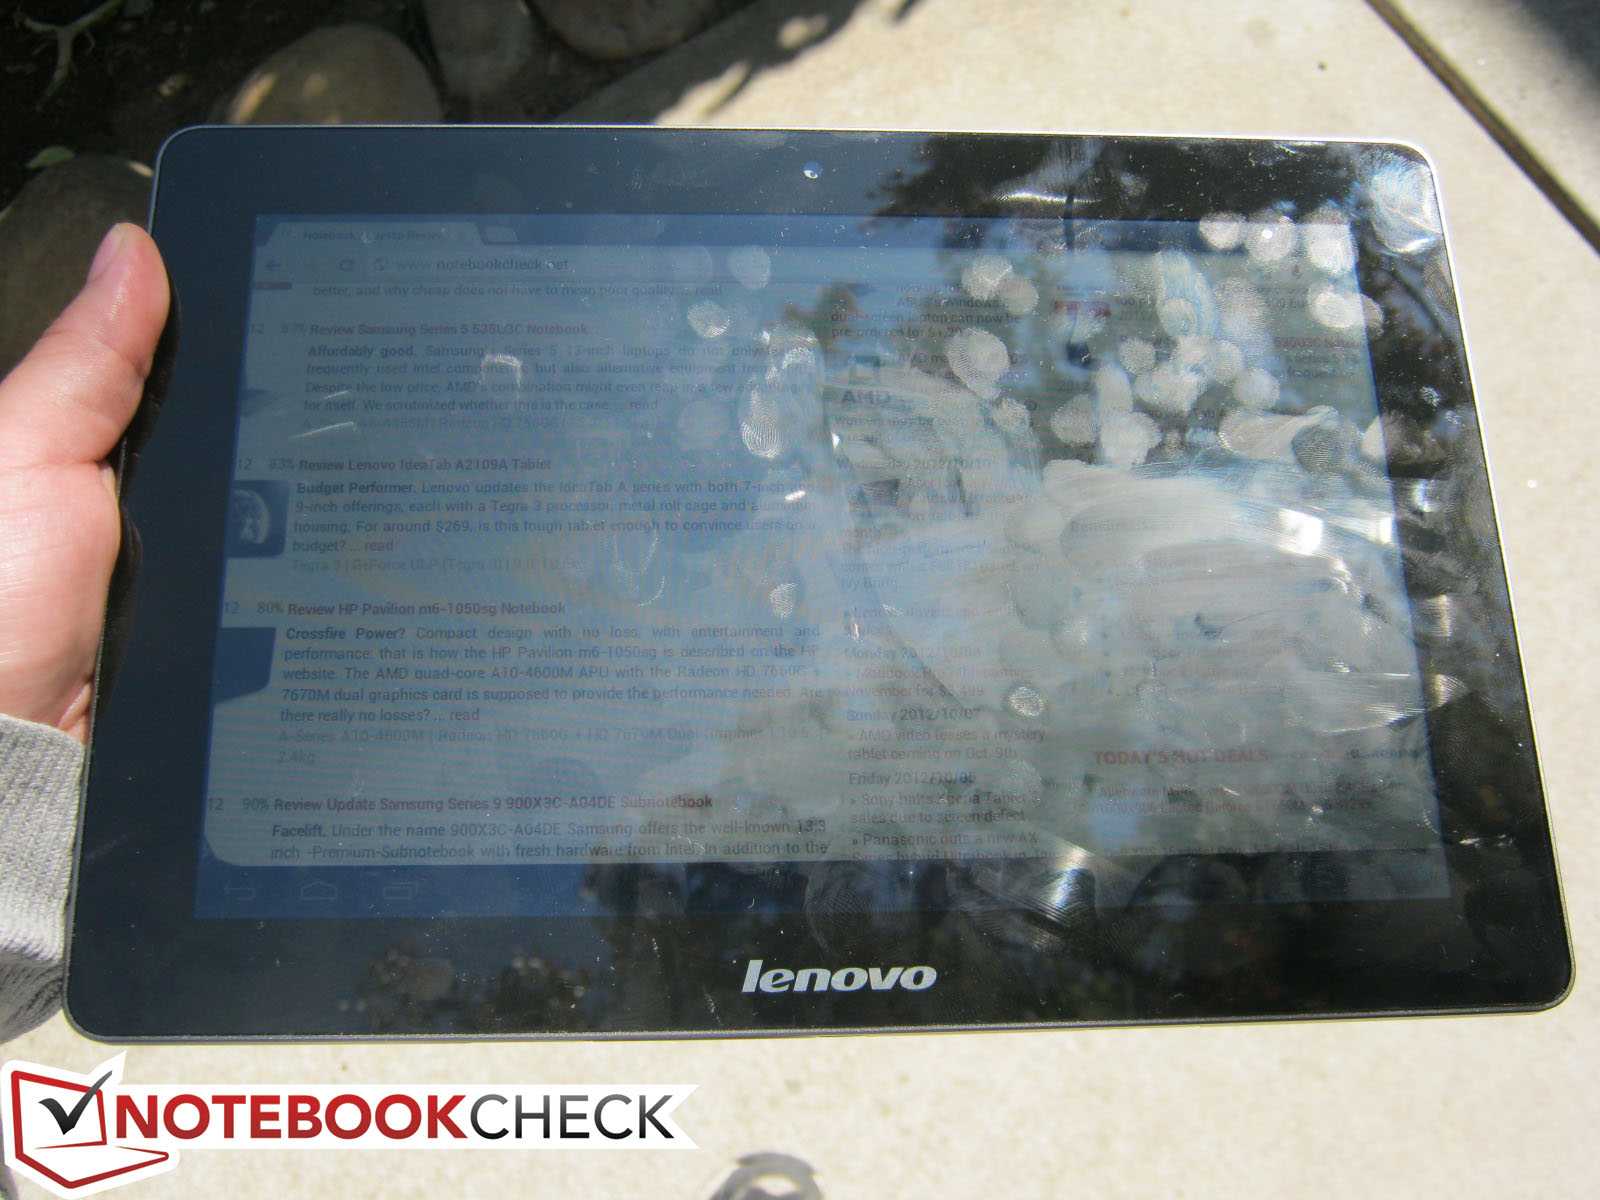 Lenovo ideatab s2110 16gb 3g купить по акционной цене , отзывы и обзоры.